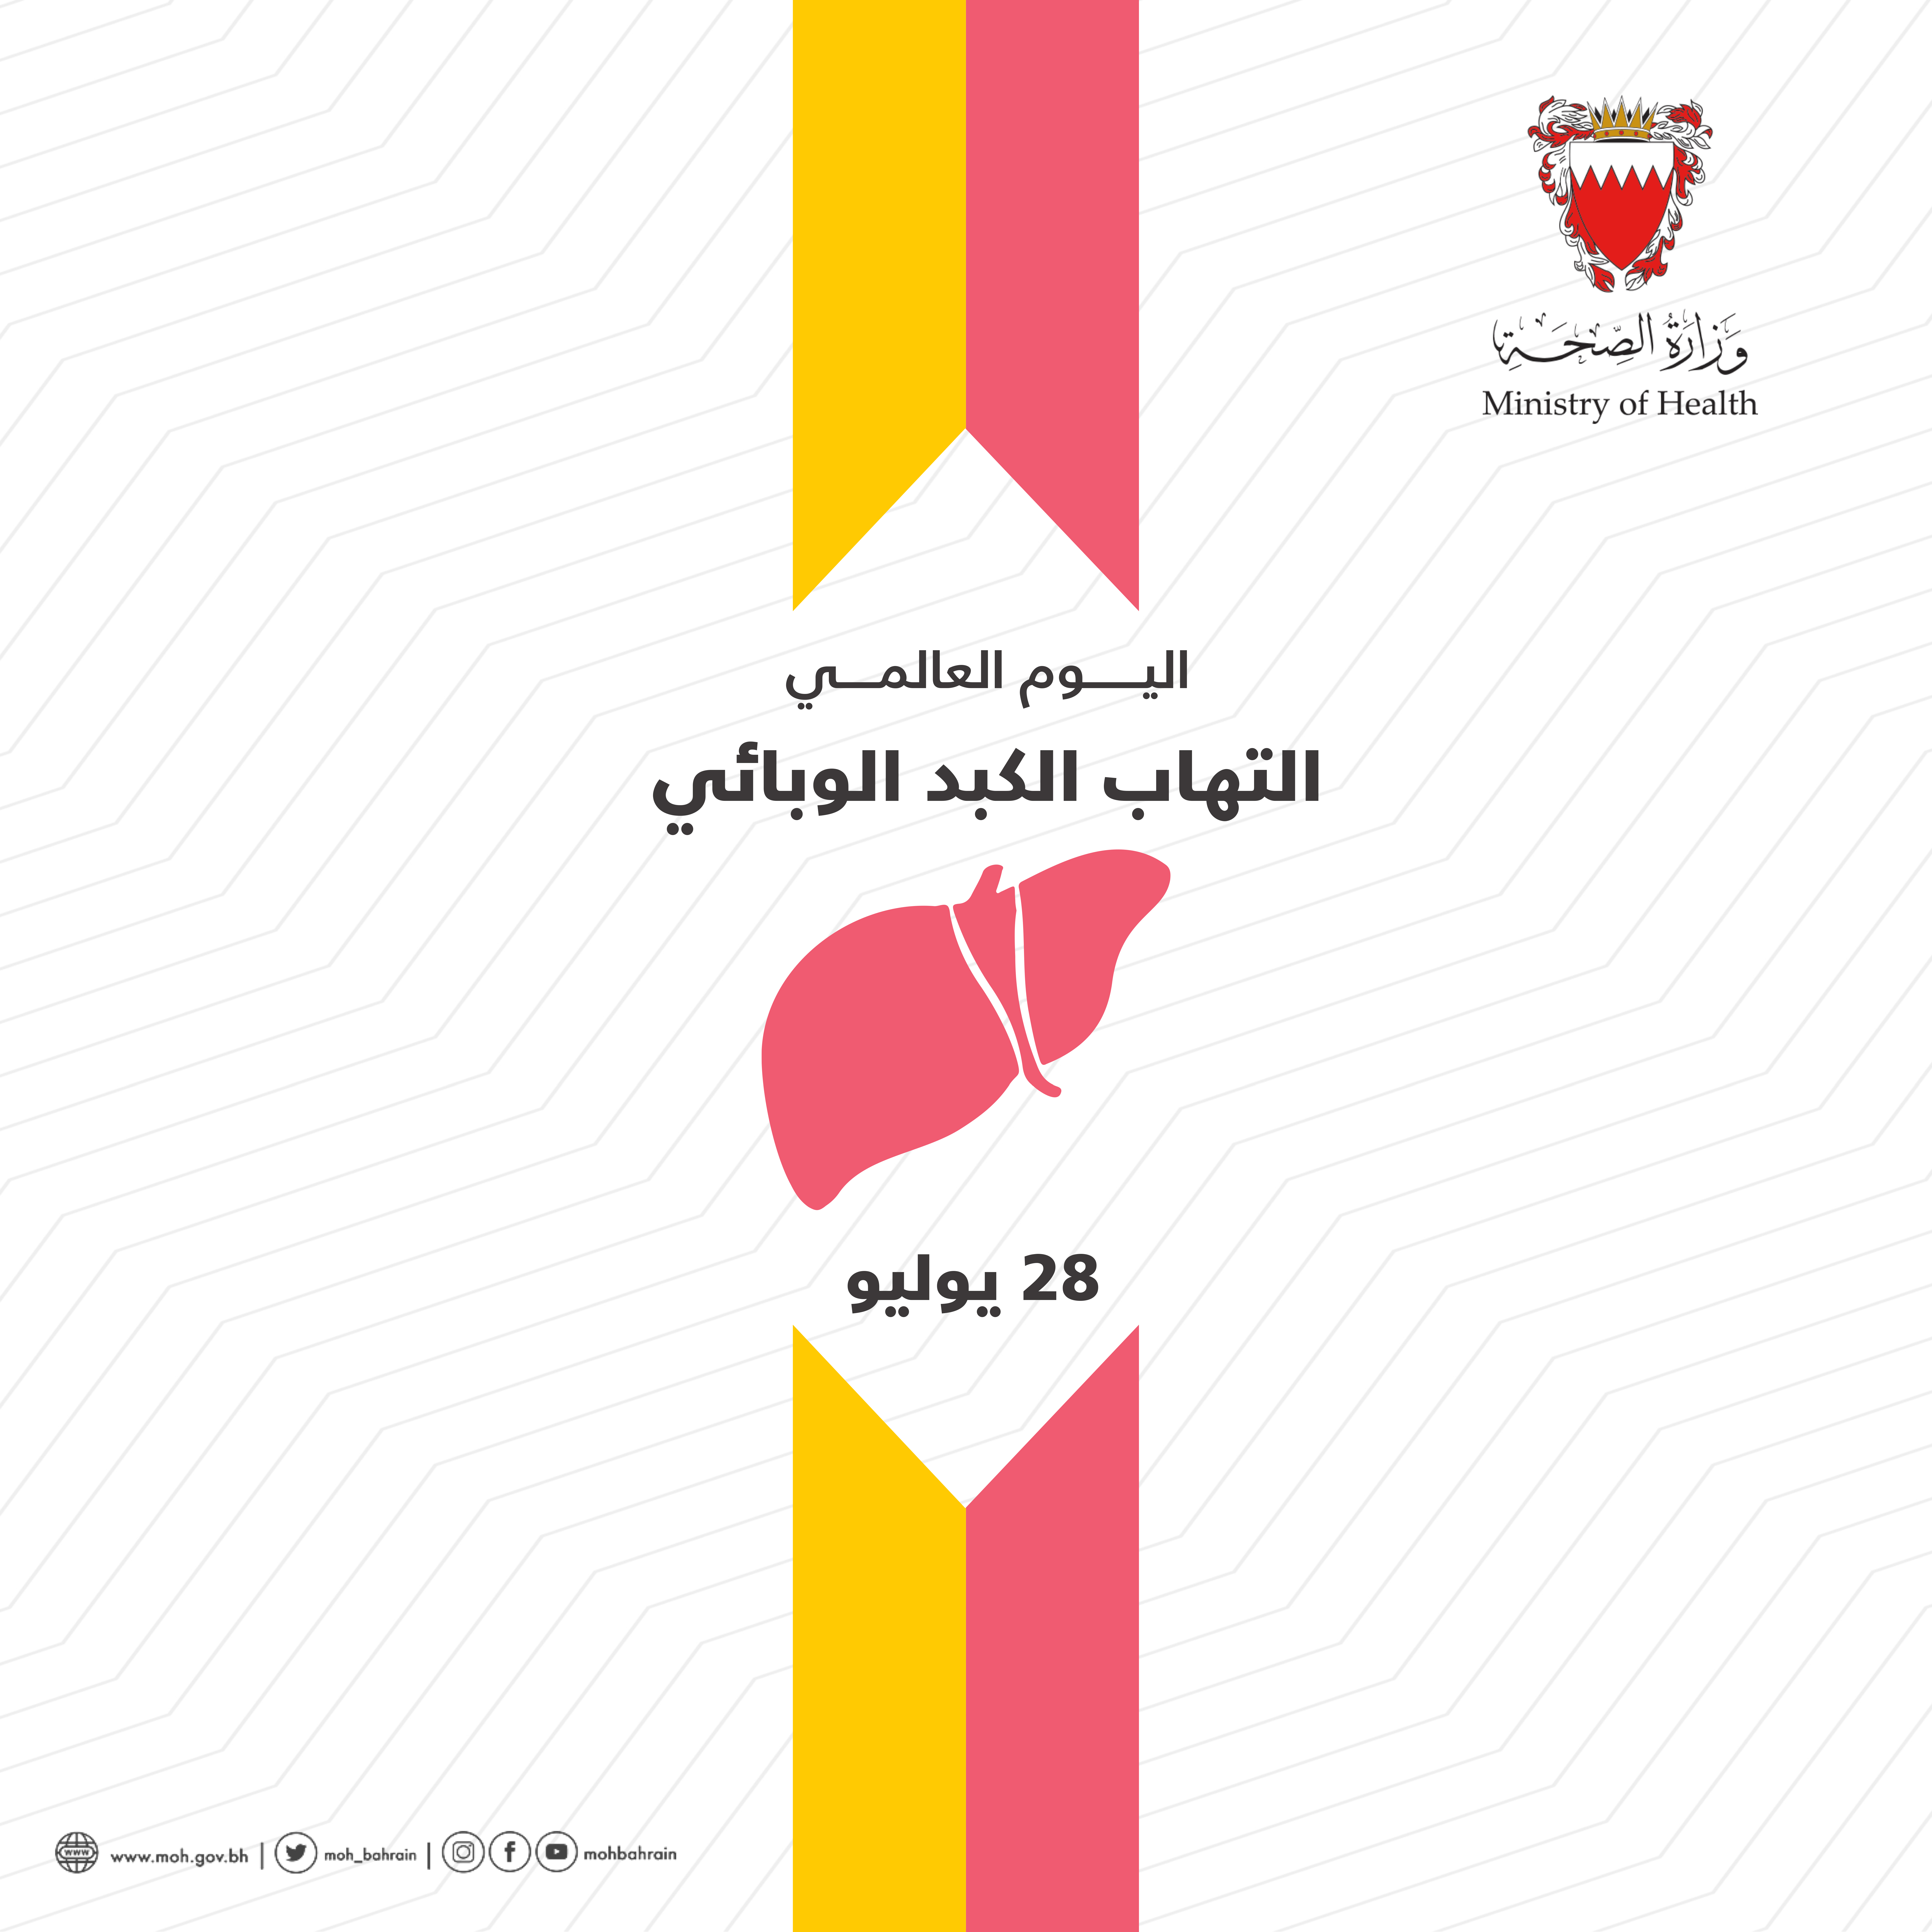 وزارة الصحة تُشارك دول العالم الاحتفال باليوم العالمي لالتهاب الكبد 28 يوليو الجاري